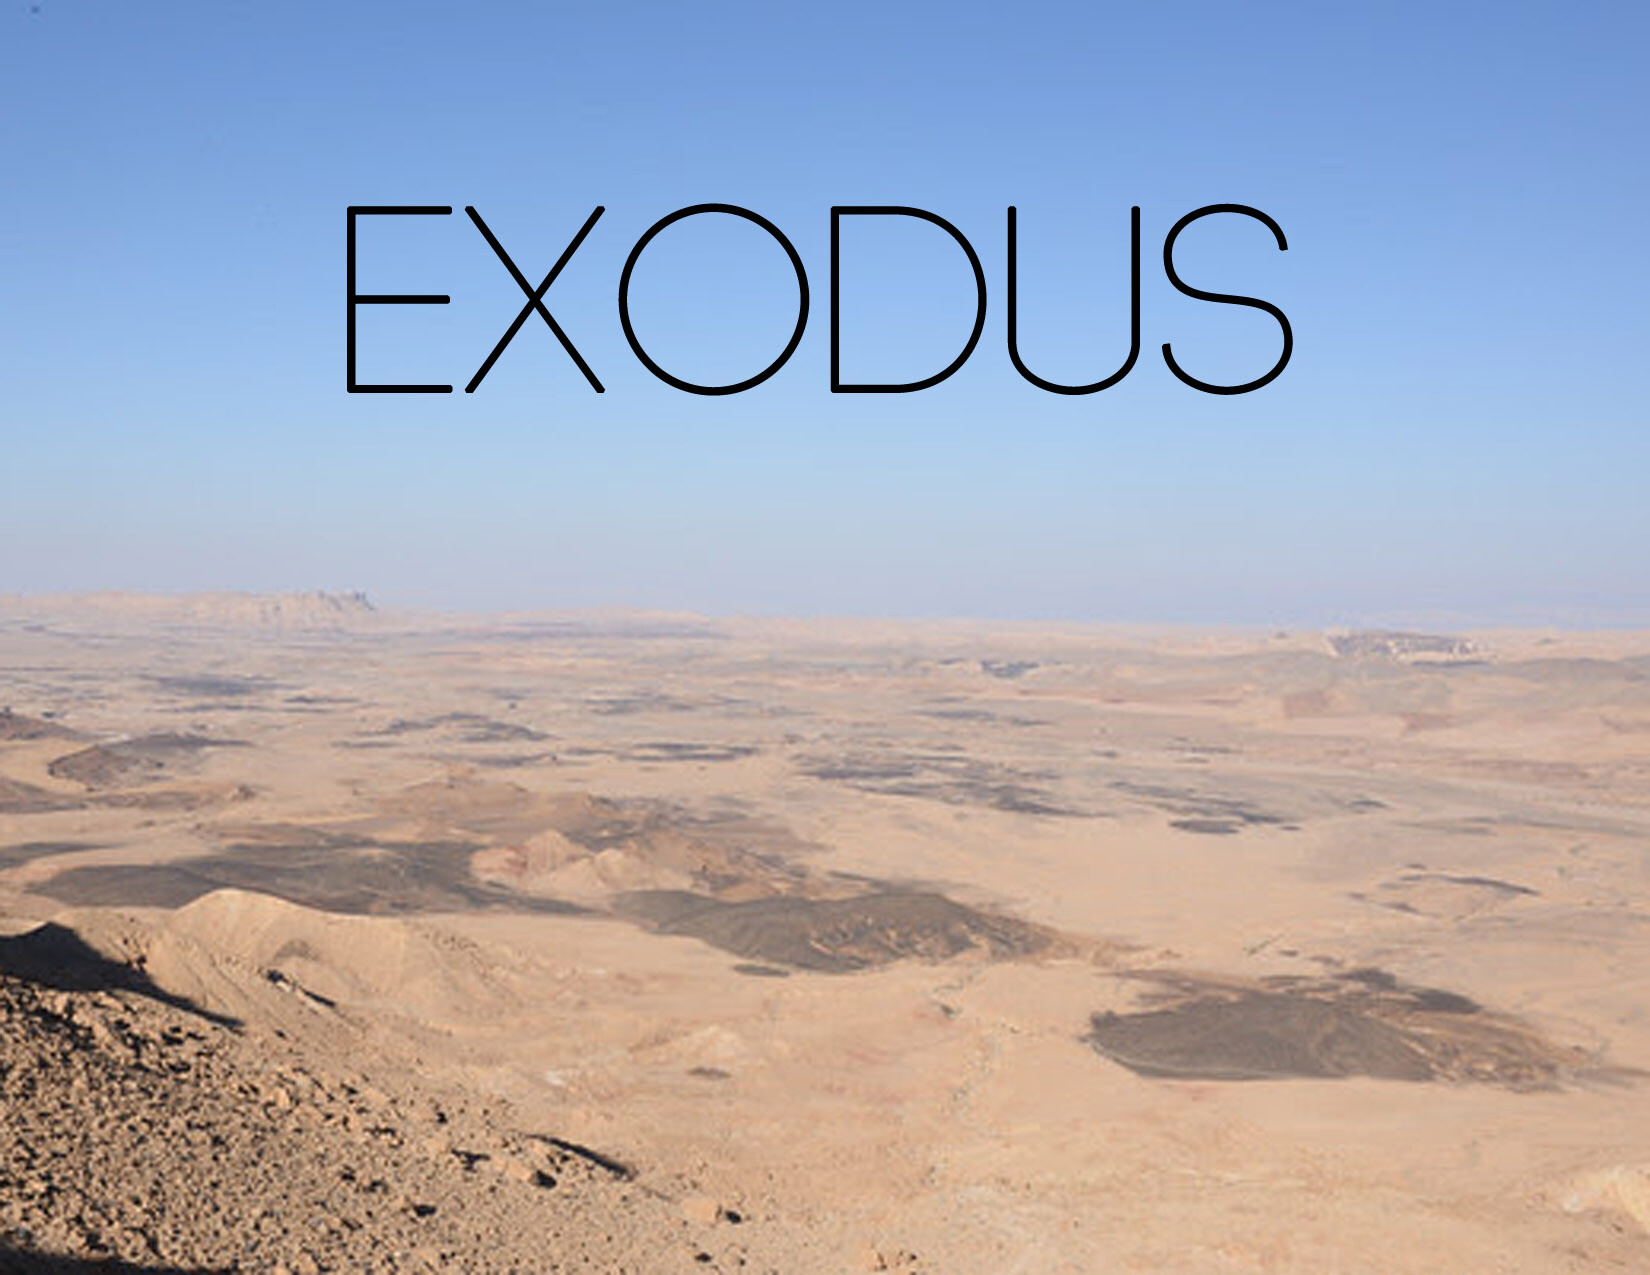 Exodus 15